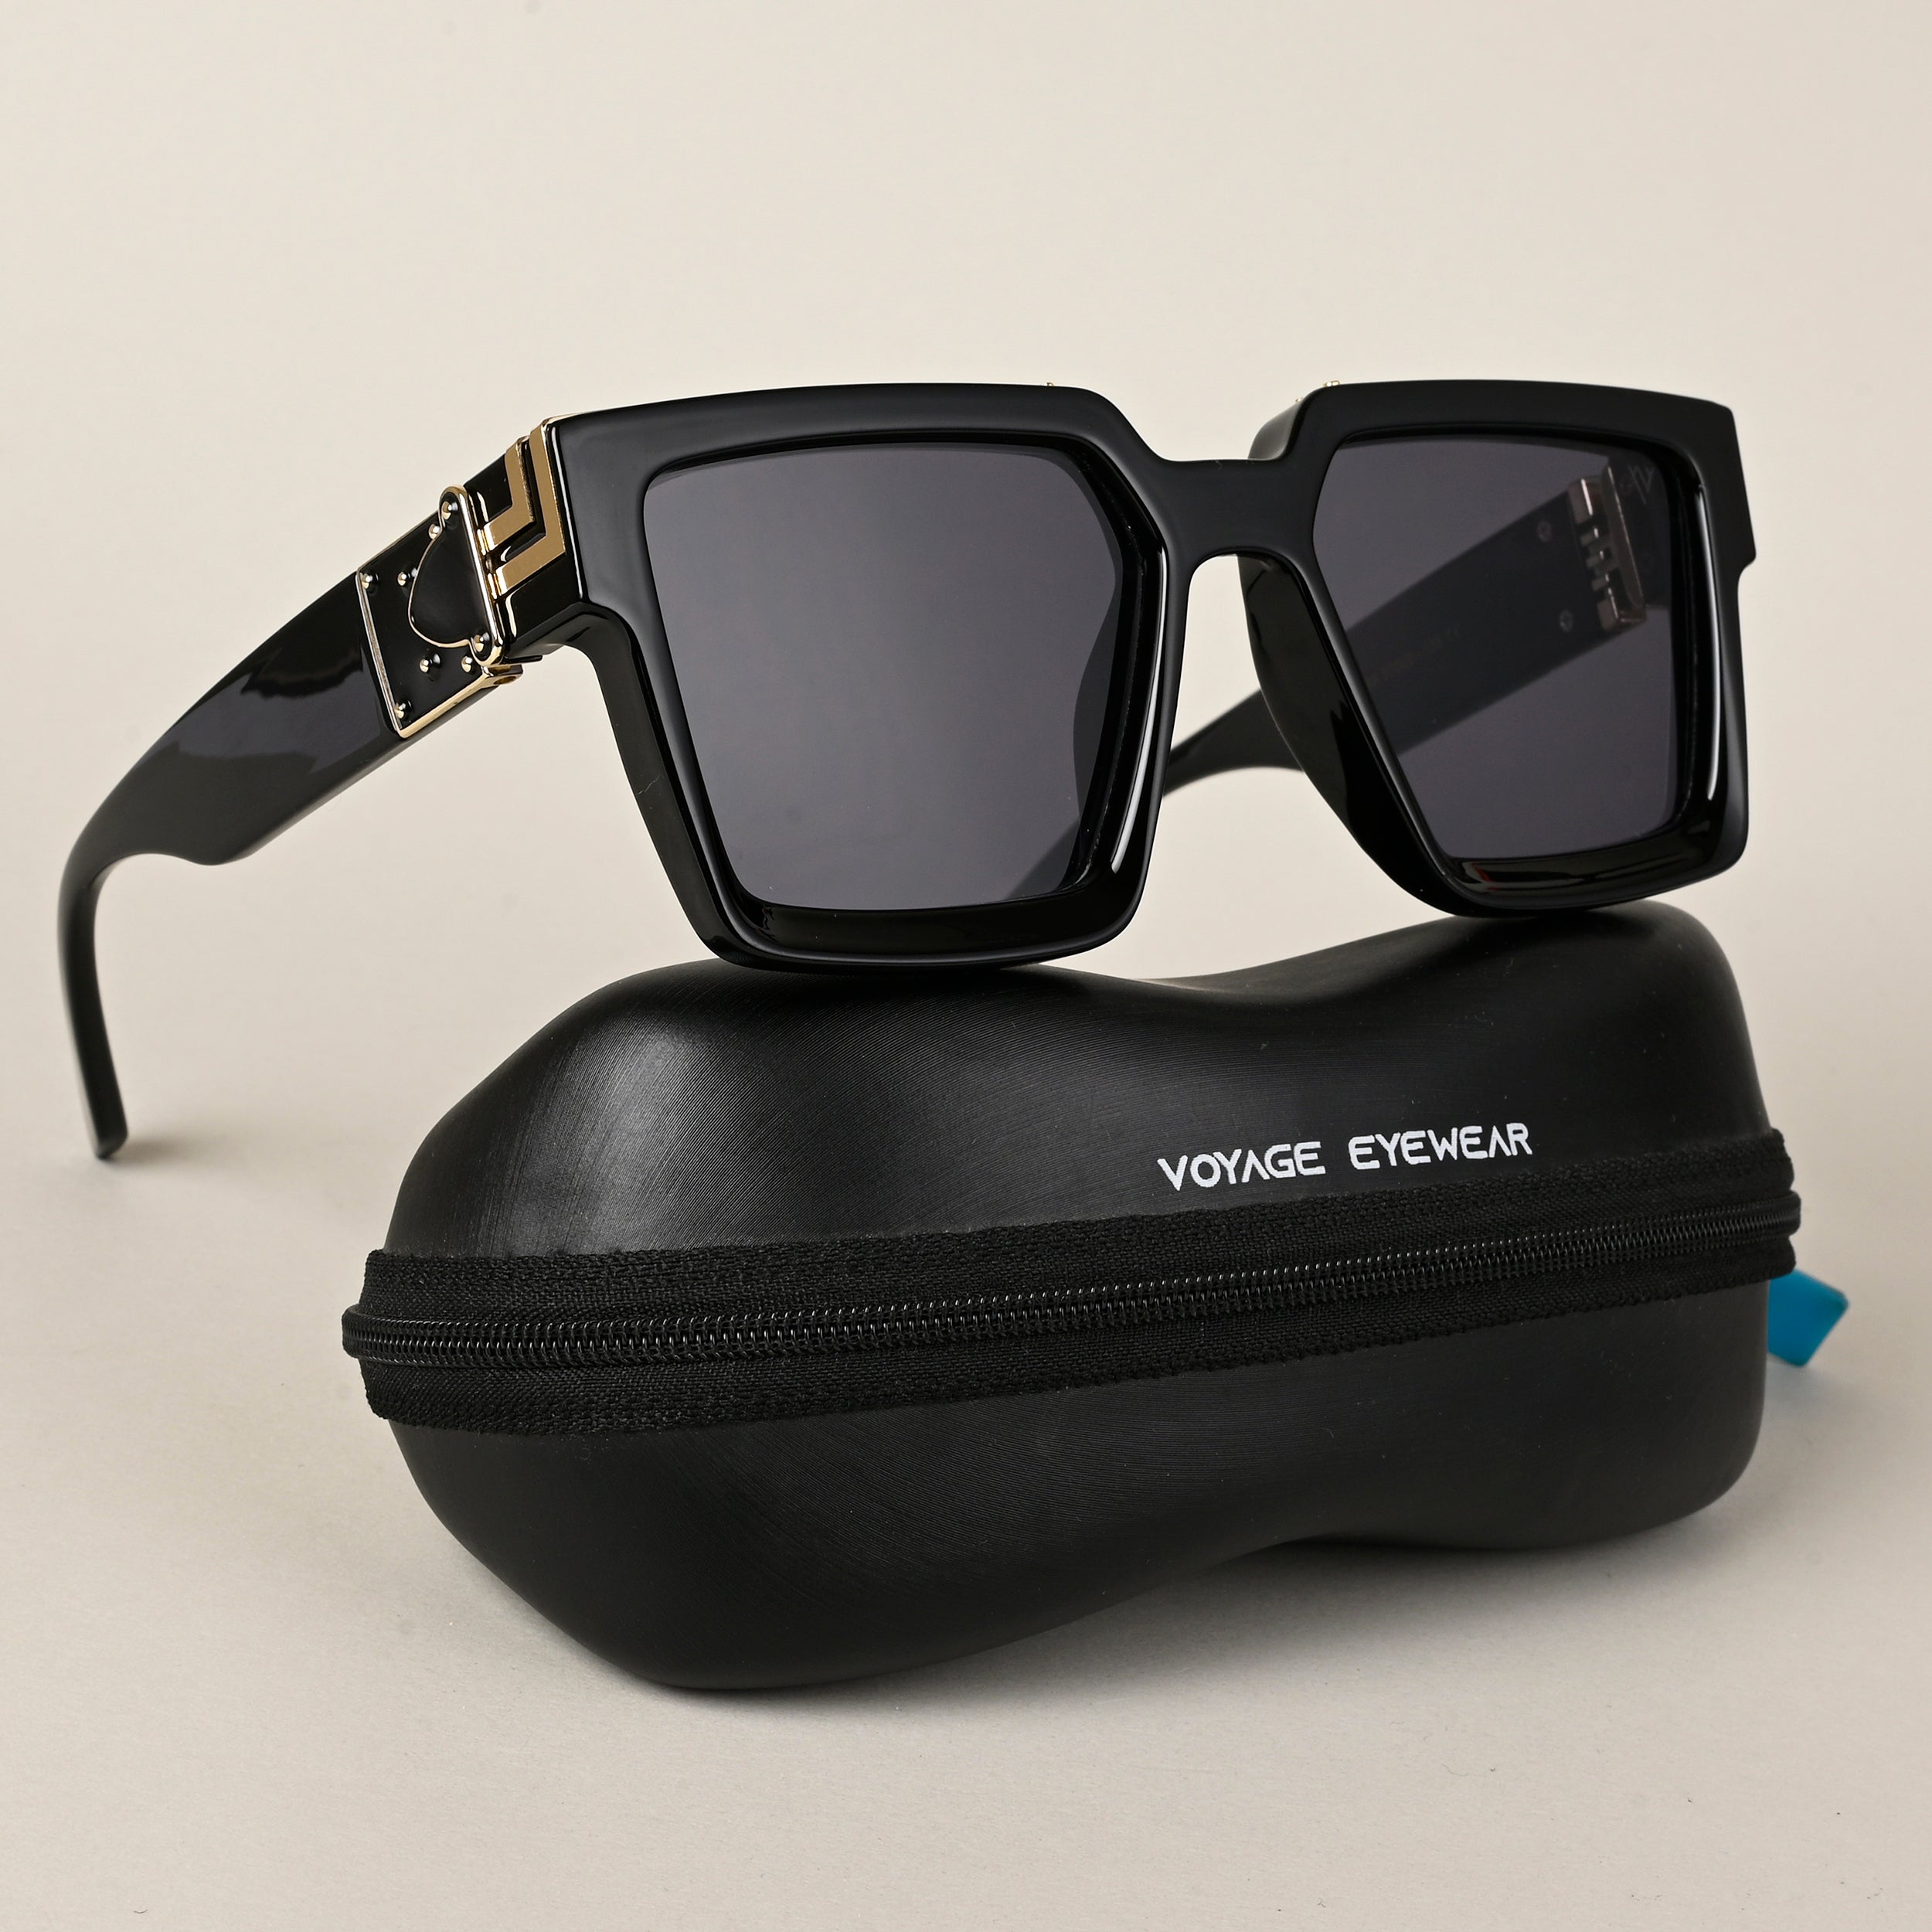 Voyage Wayfarer Sunglasses for Men & Women (Black Lens | Black & Golden Frame - MG5174)